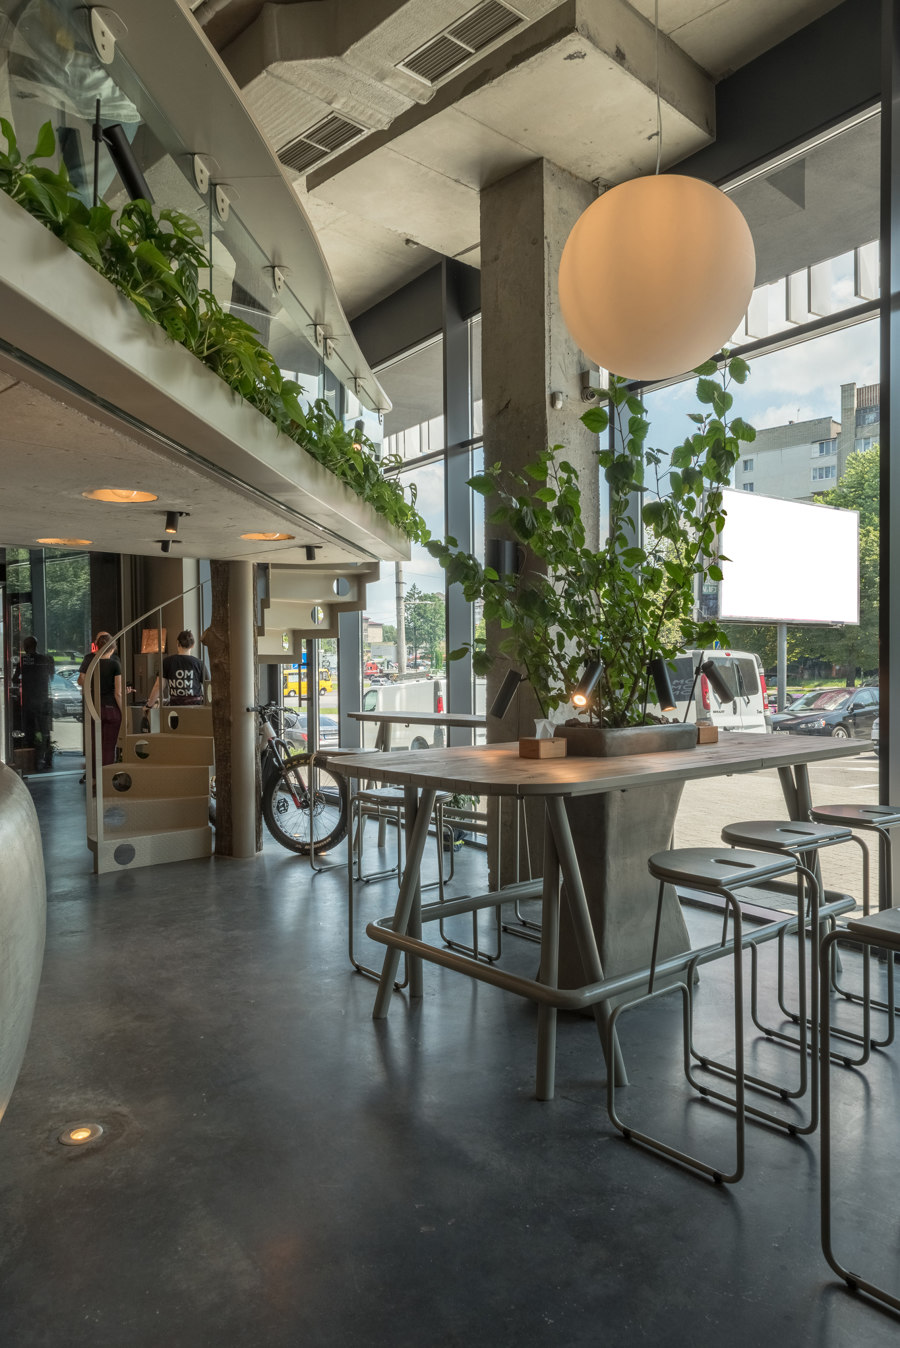 OM NOM NOM vegan cafe by replus design bureau | Café interiors